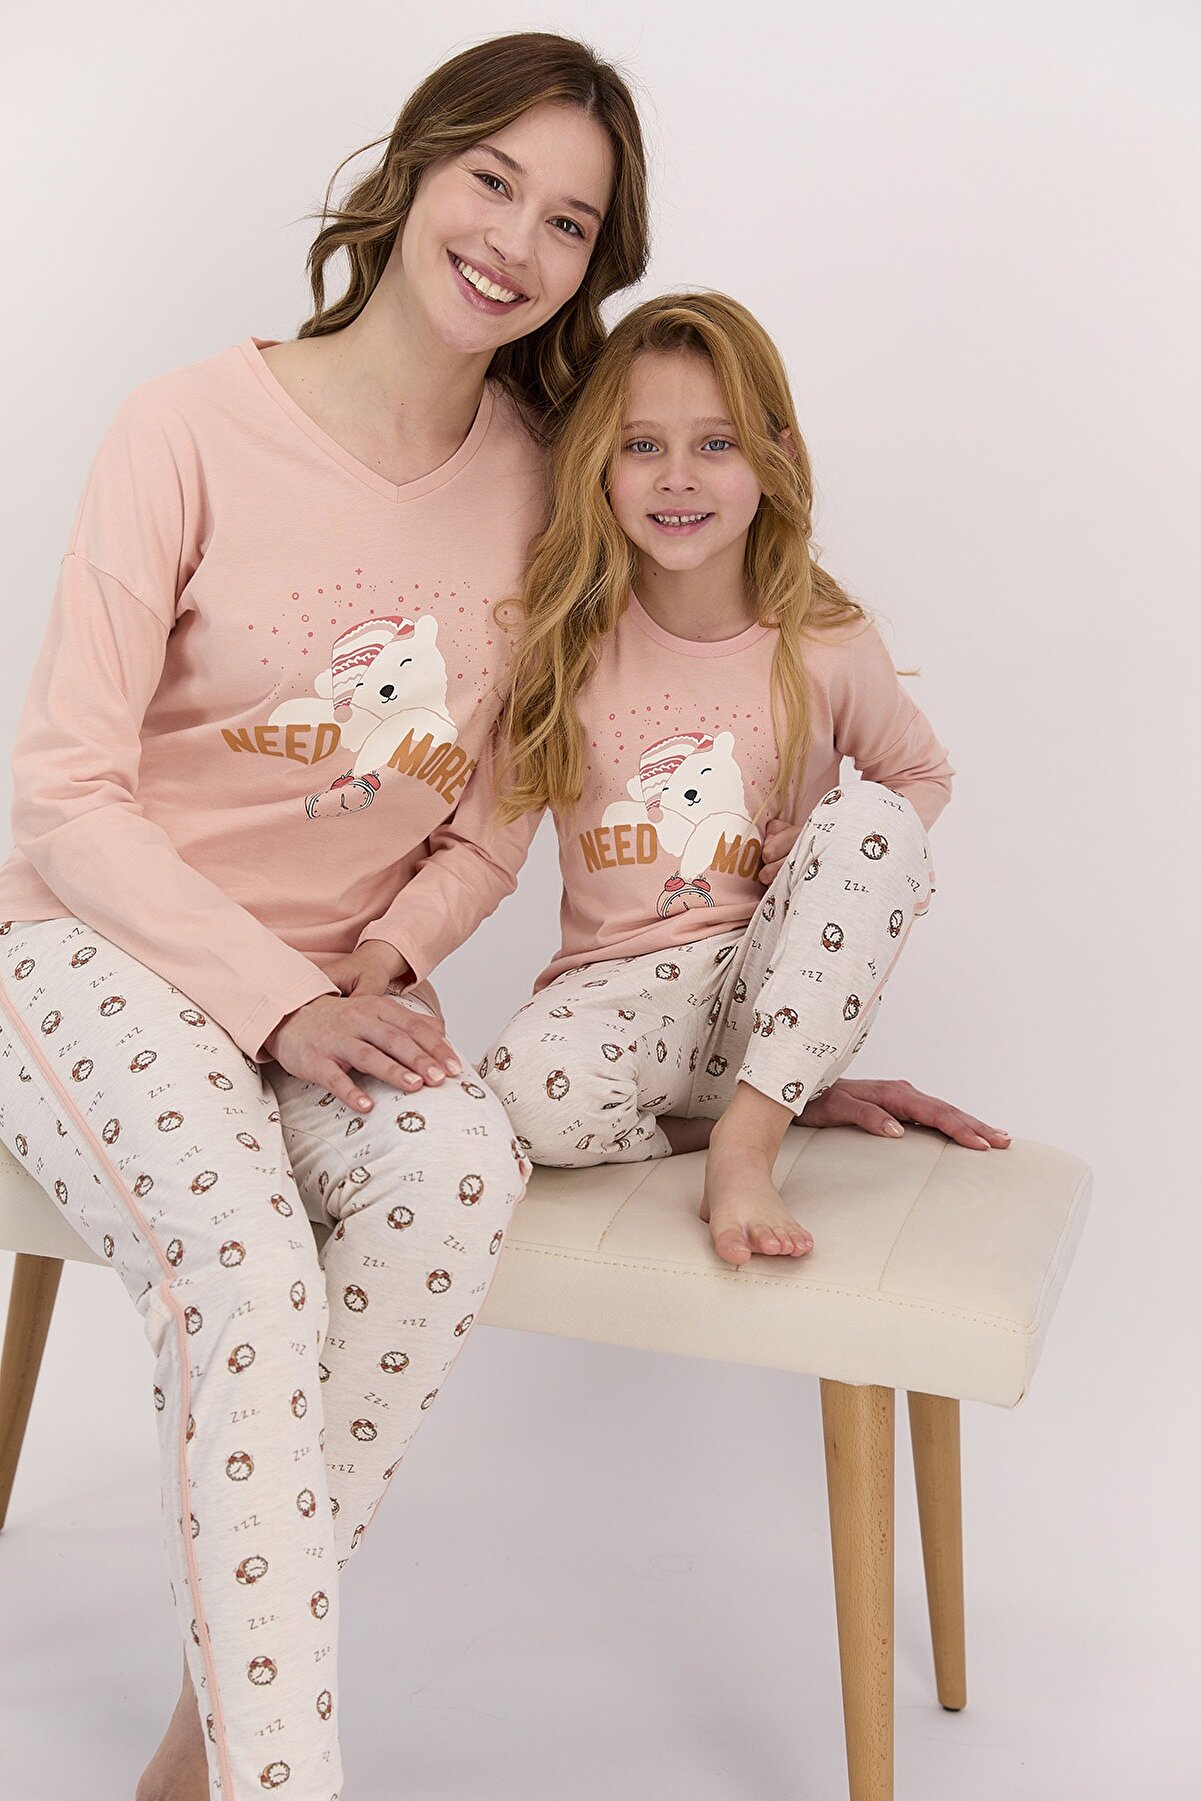 Arnetta Kadın Uzun Kol Need More Yazıl Pijama Takımı (anne Kız Takım Yapılabilir Fiyatlar Farklıdır)